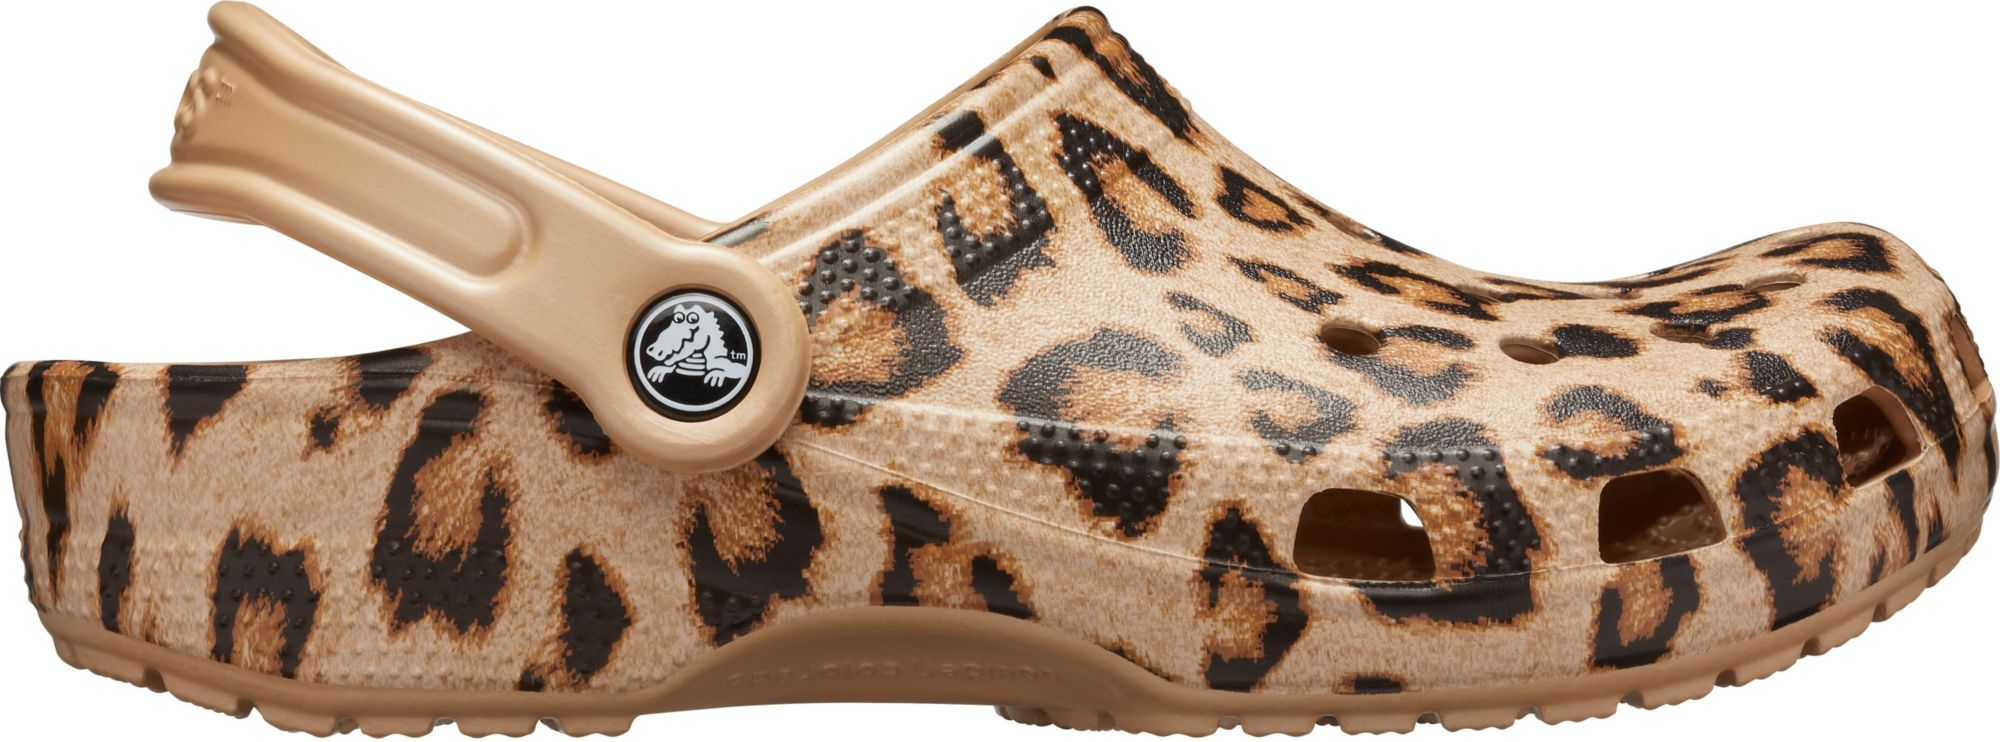 leopard print crocs women's shoes